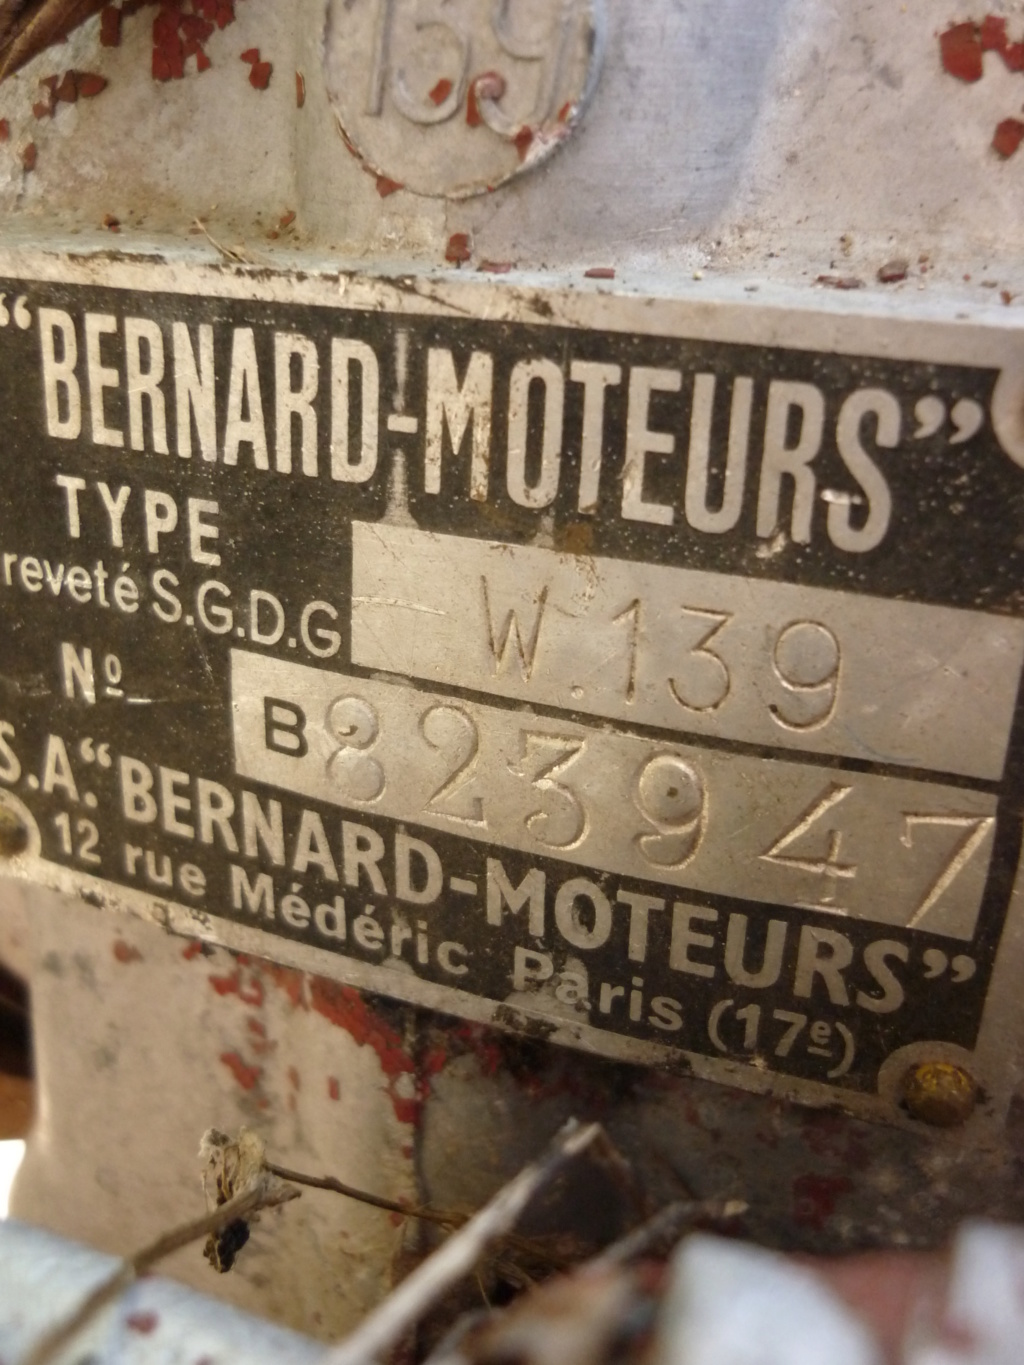 recensement moteur bernard - Page 3 Bouyer12